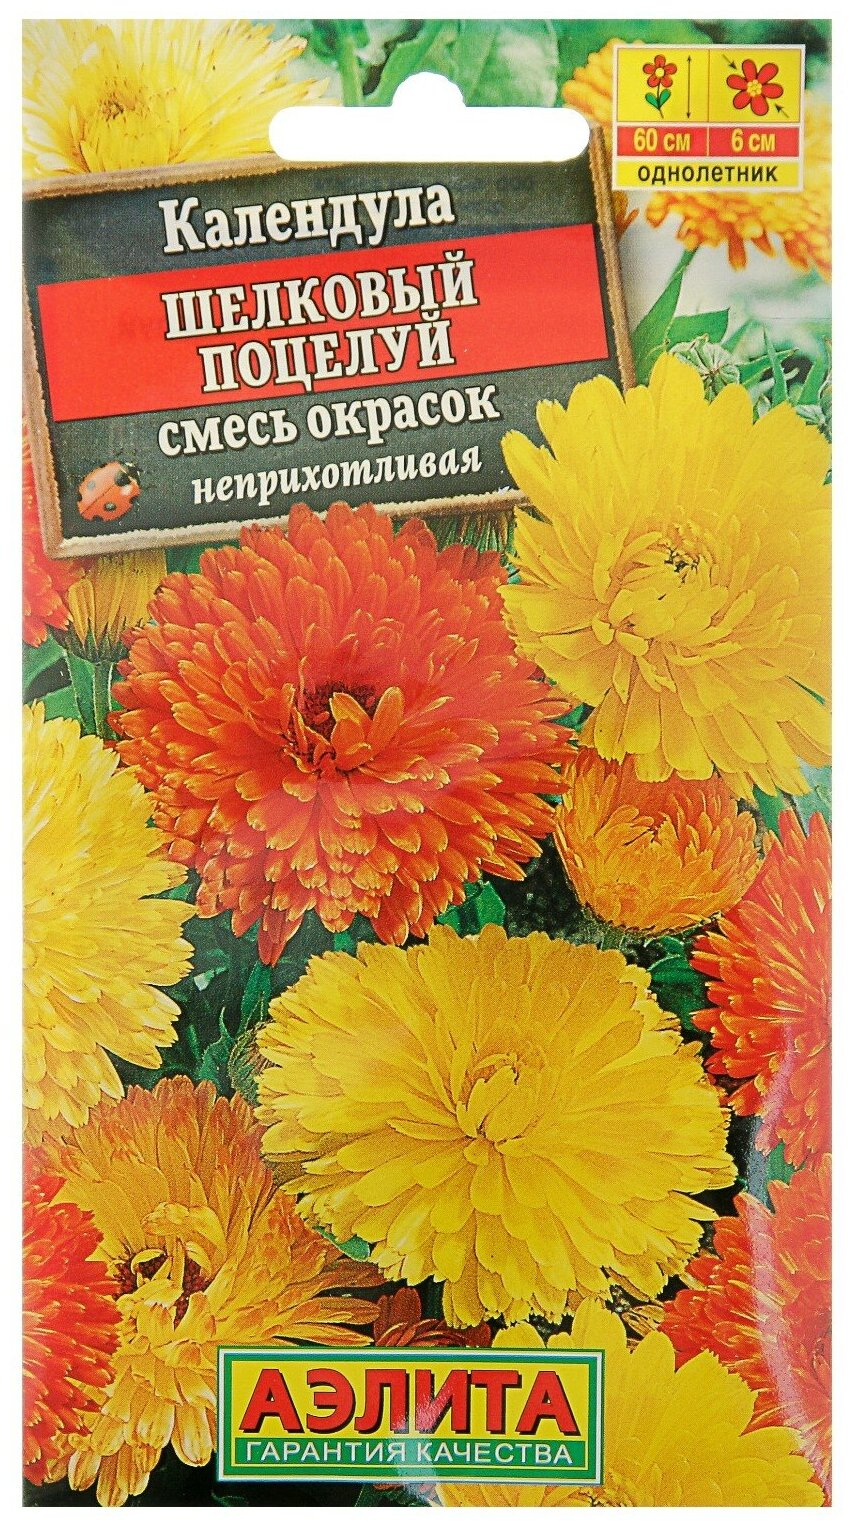 Семена цветов Календула махровая "Шелковый поцелуй" смесь окрасок О 05 г